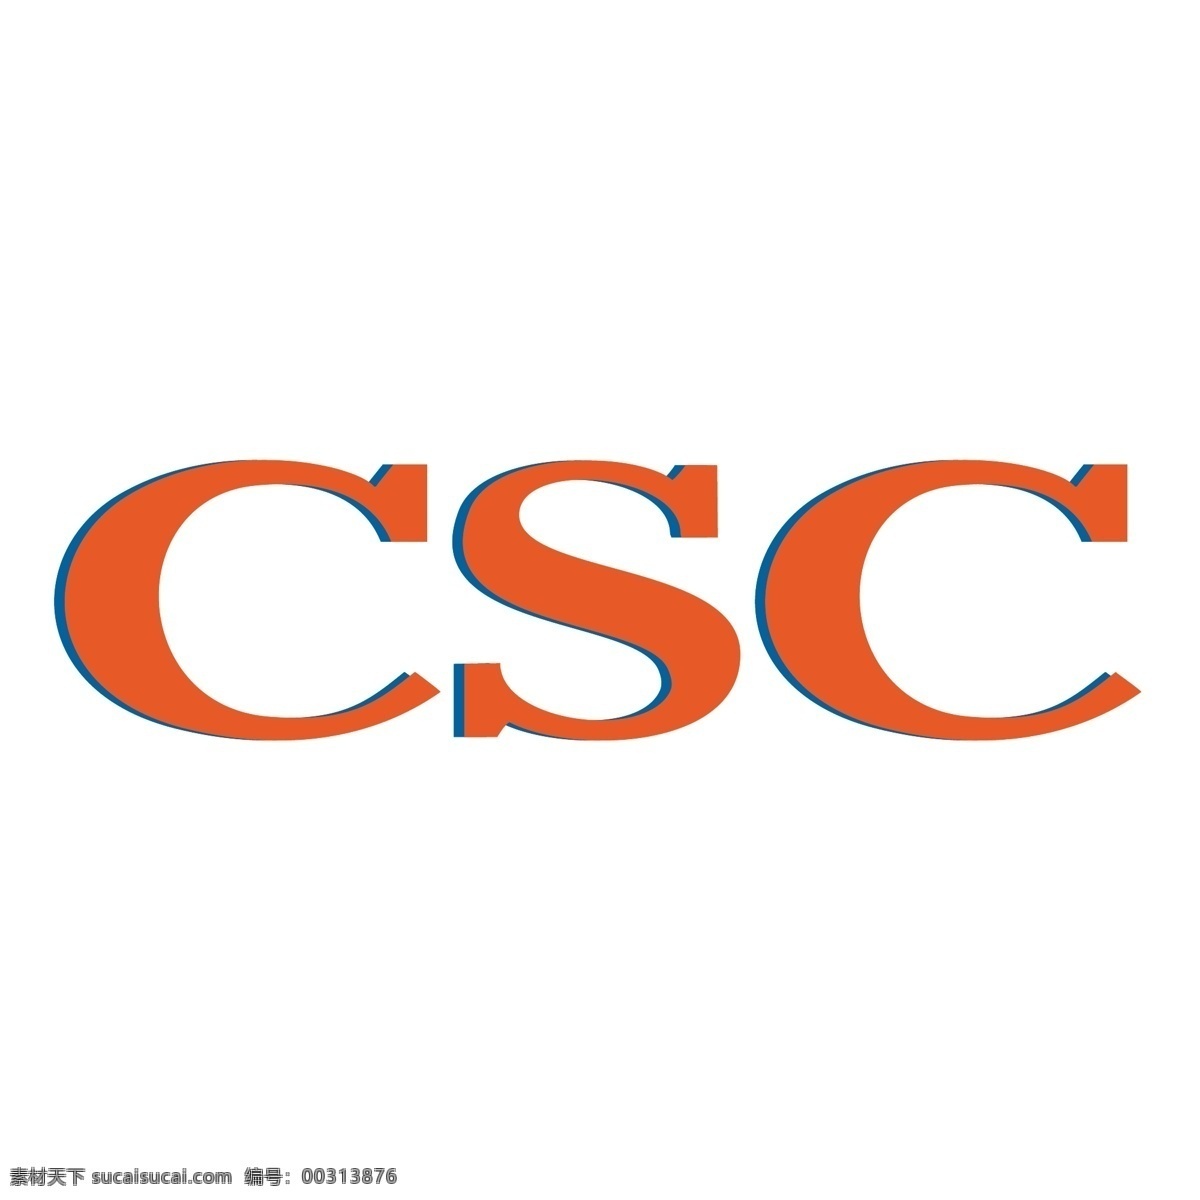 csc 矢量标志下载 免费矢量标识 商标 品牌标识 标识 矢量 免费 品牌 公司 白色